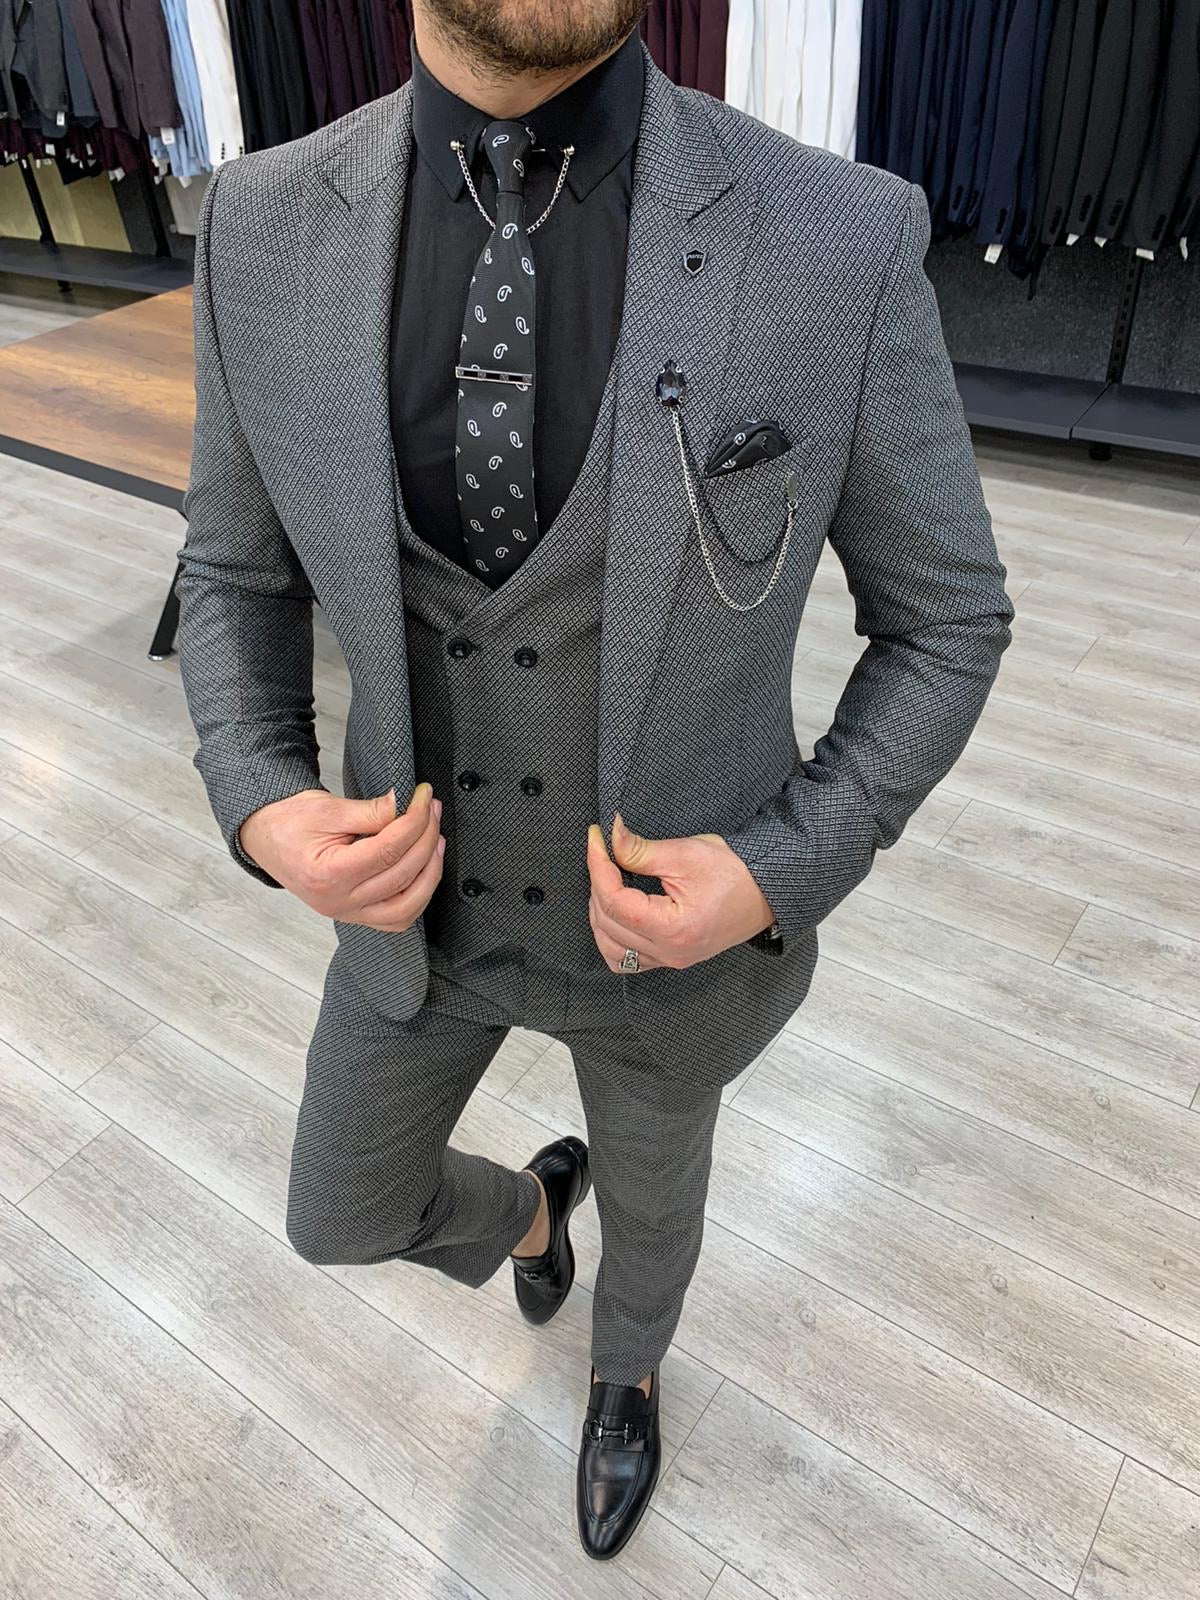 Men's Suits - Slim Fit